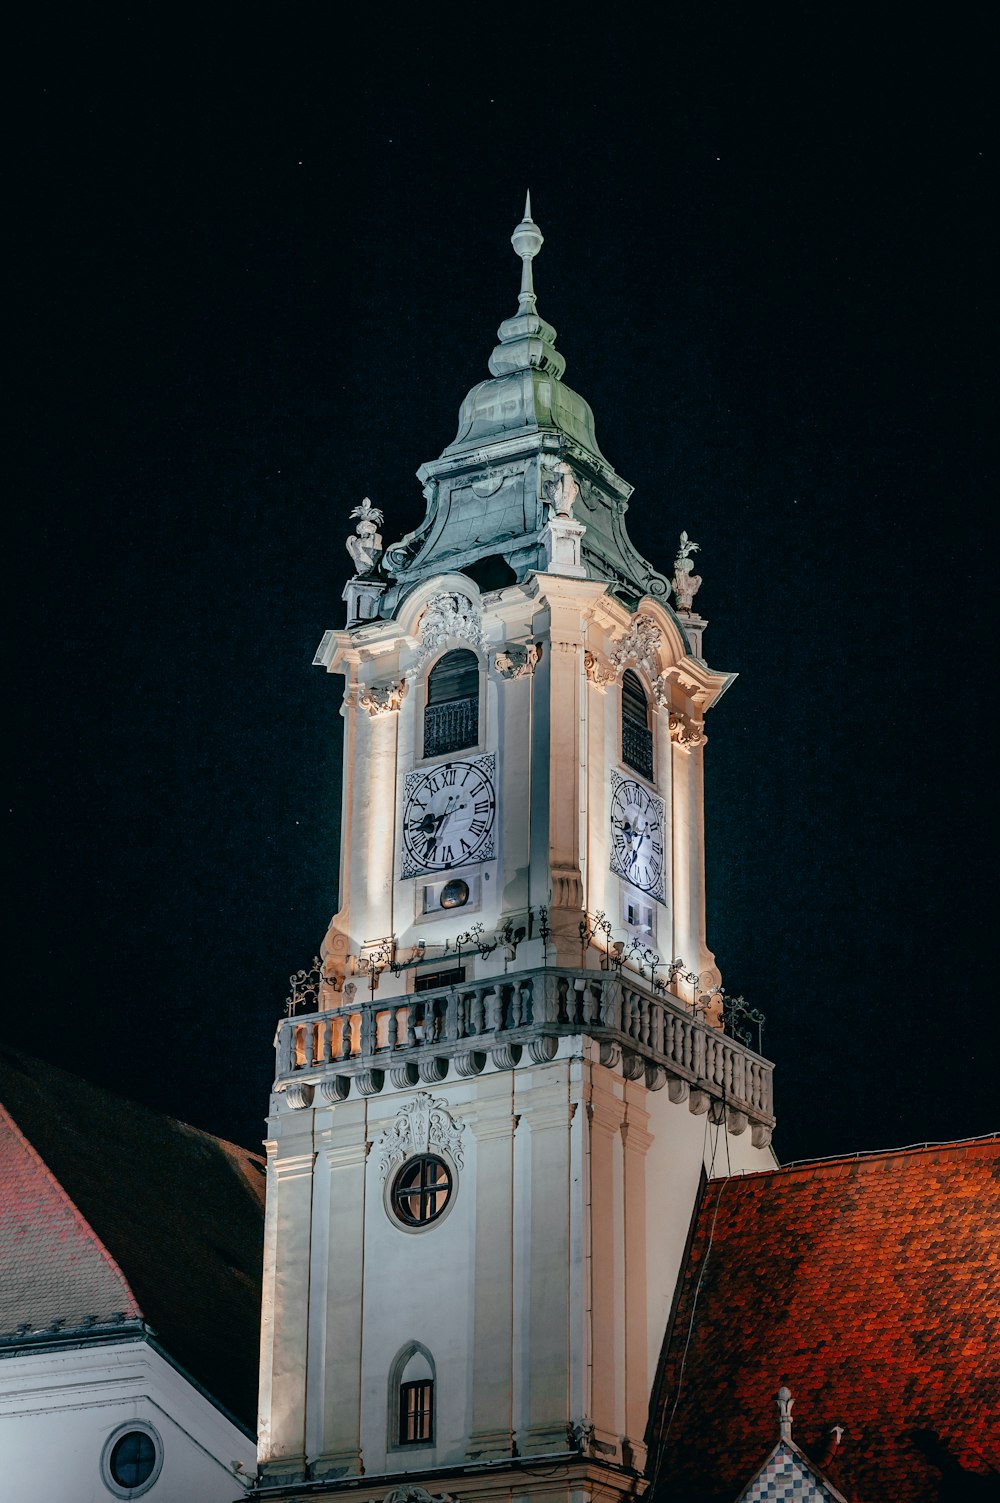 uma torre do relógio alta com um relógio em cada um dos seus lados